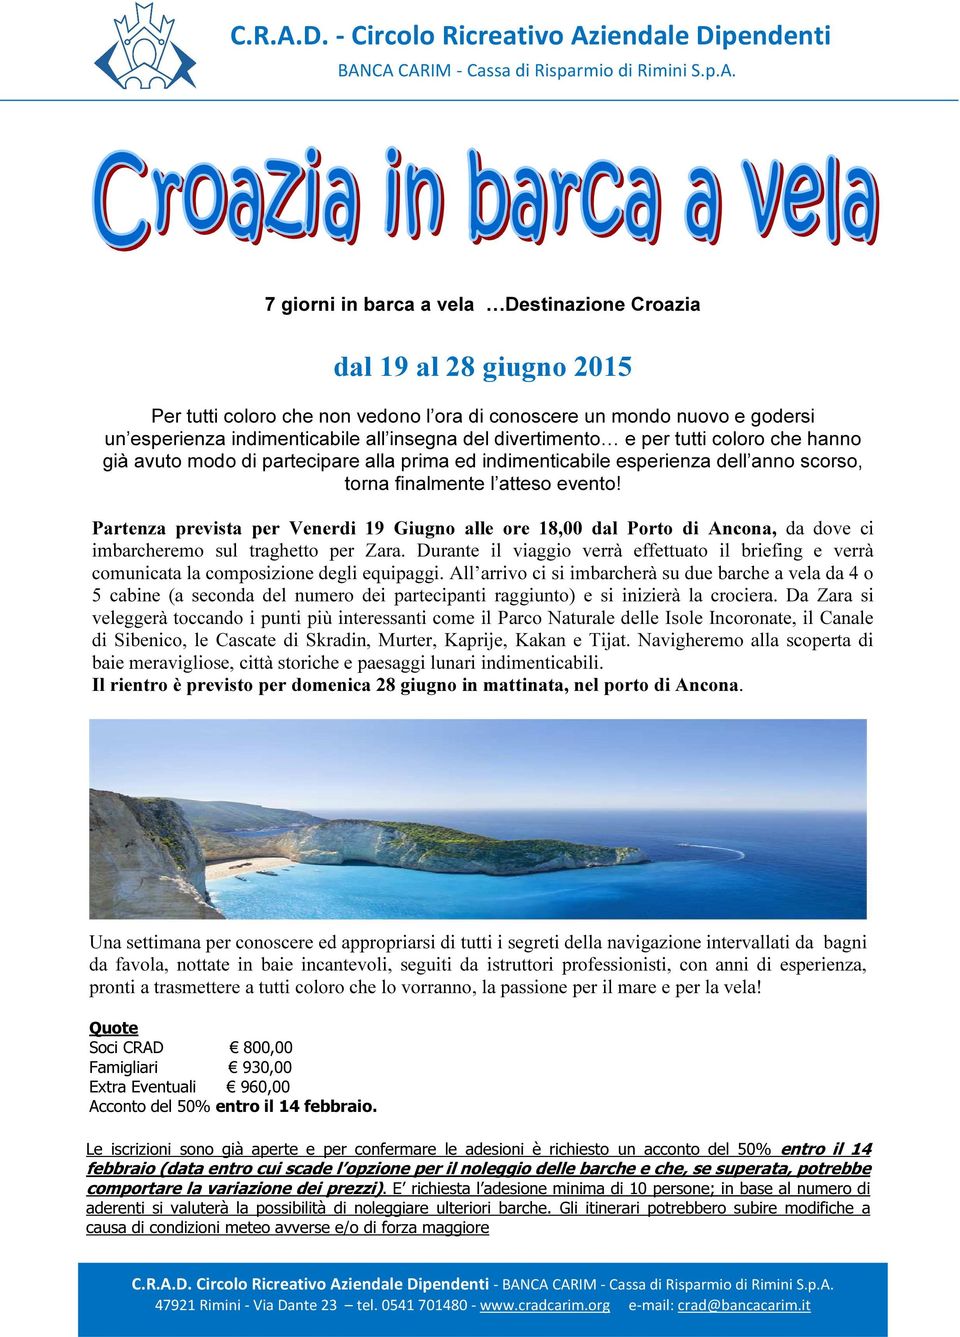 Partenza prevista per Venerdi 19 Giugno alle ore 18,00 dal Porto di Ancona, da dove ci imbarcheremo sul traghetto per Zara.